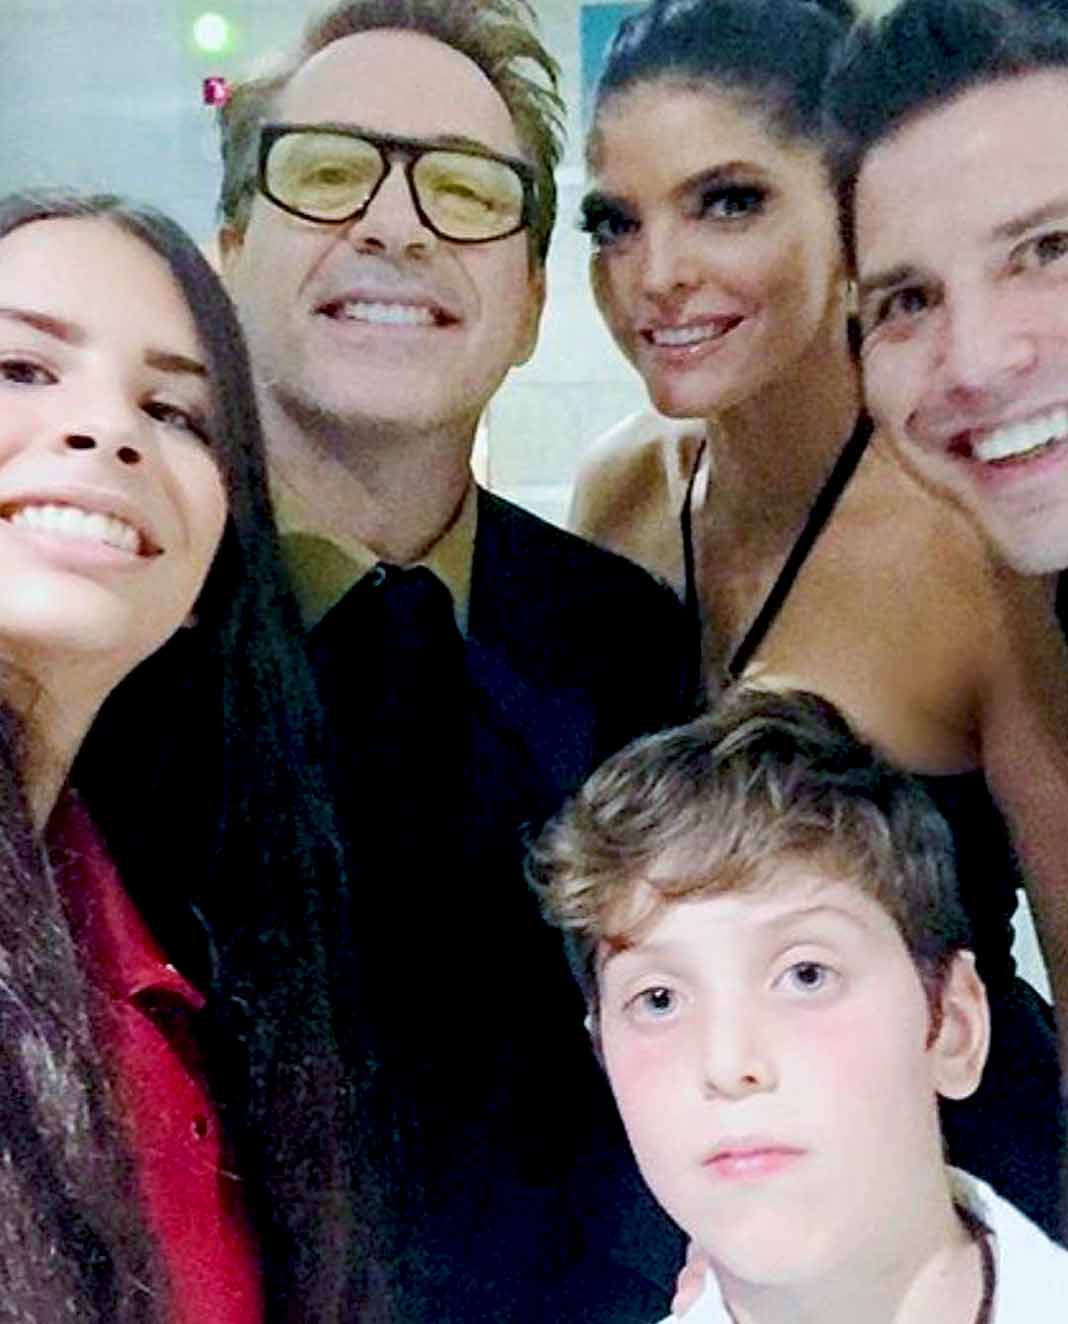 La grupera y su familia se tomaron una selfie con Robert Downey Jr.